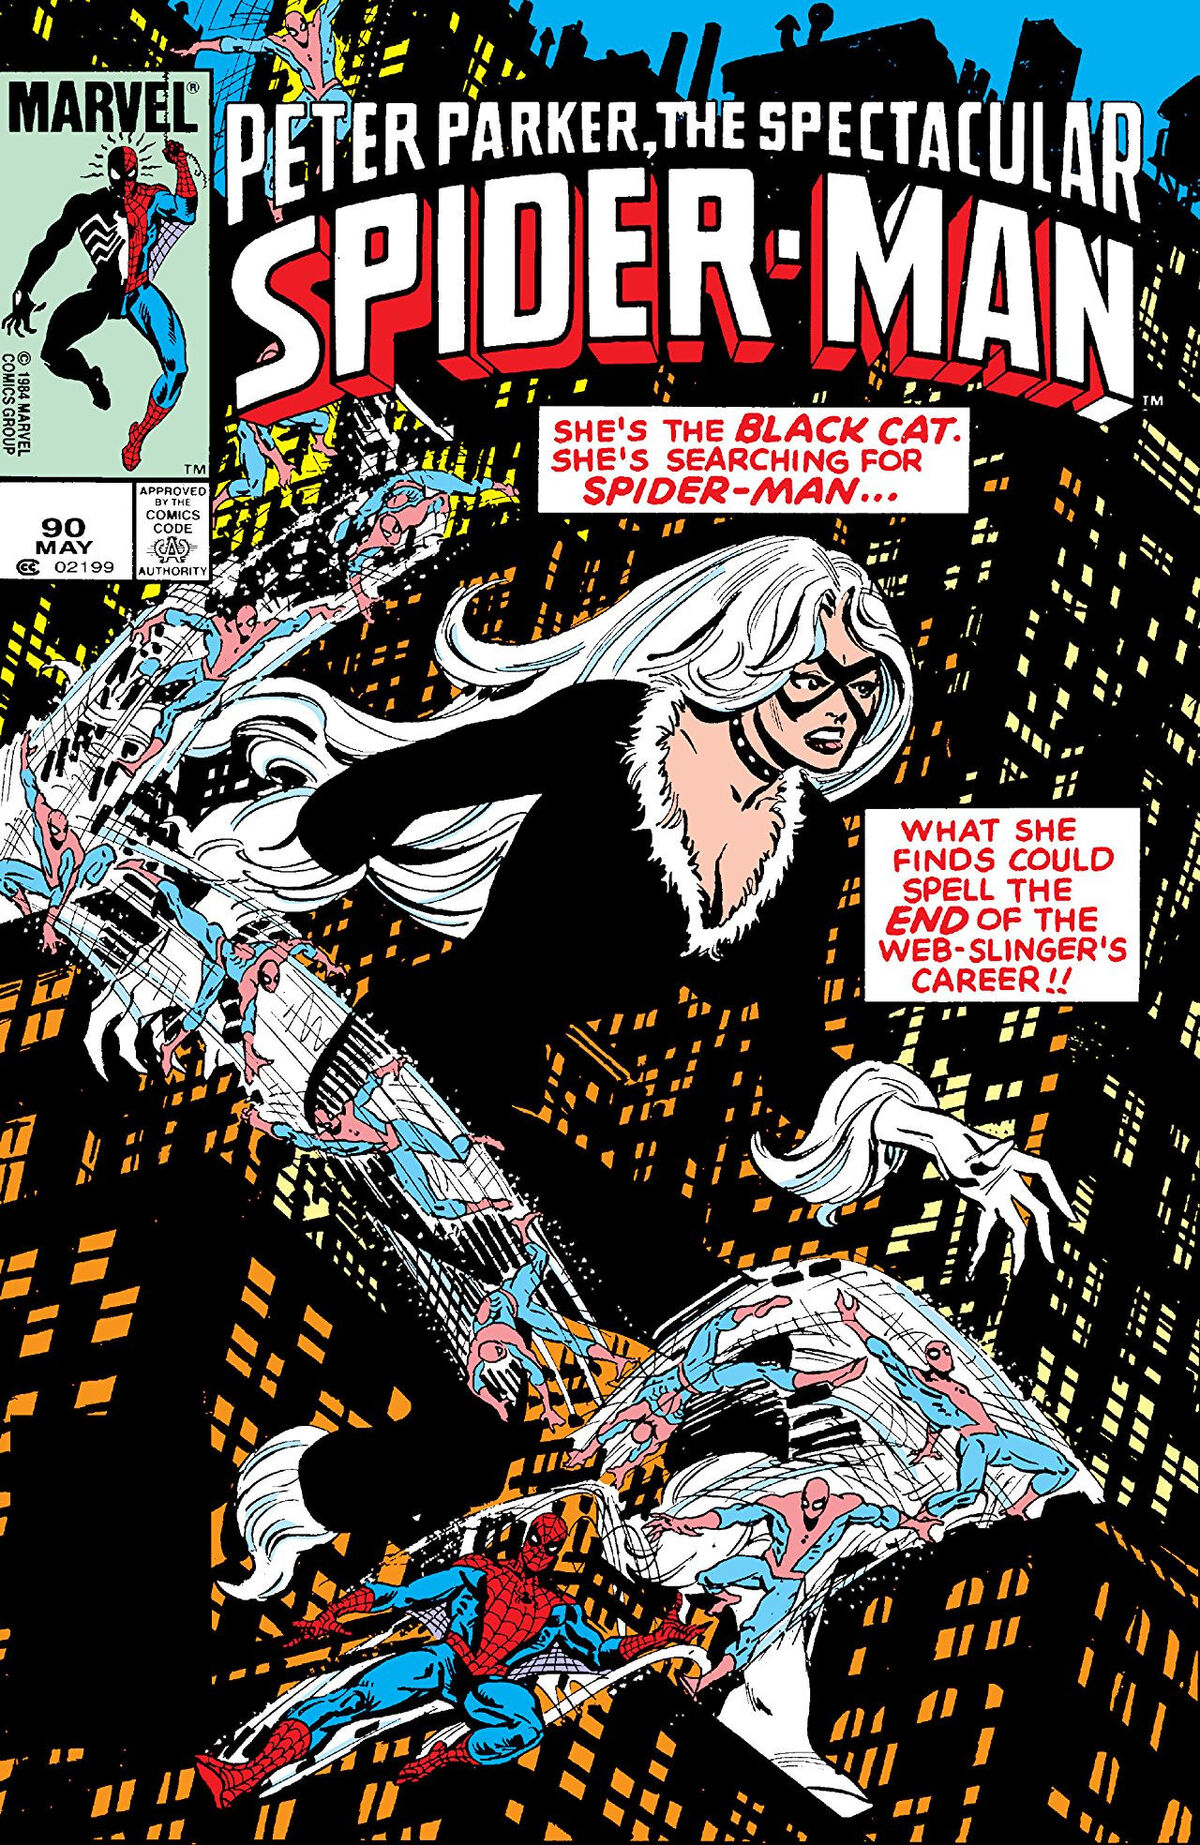 Peter Parker, The Spectacular Spider-Man Vol 1 90 | Marvel Database | Fandom